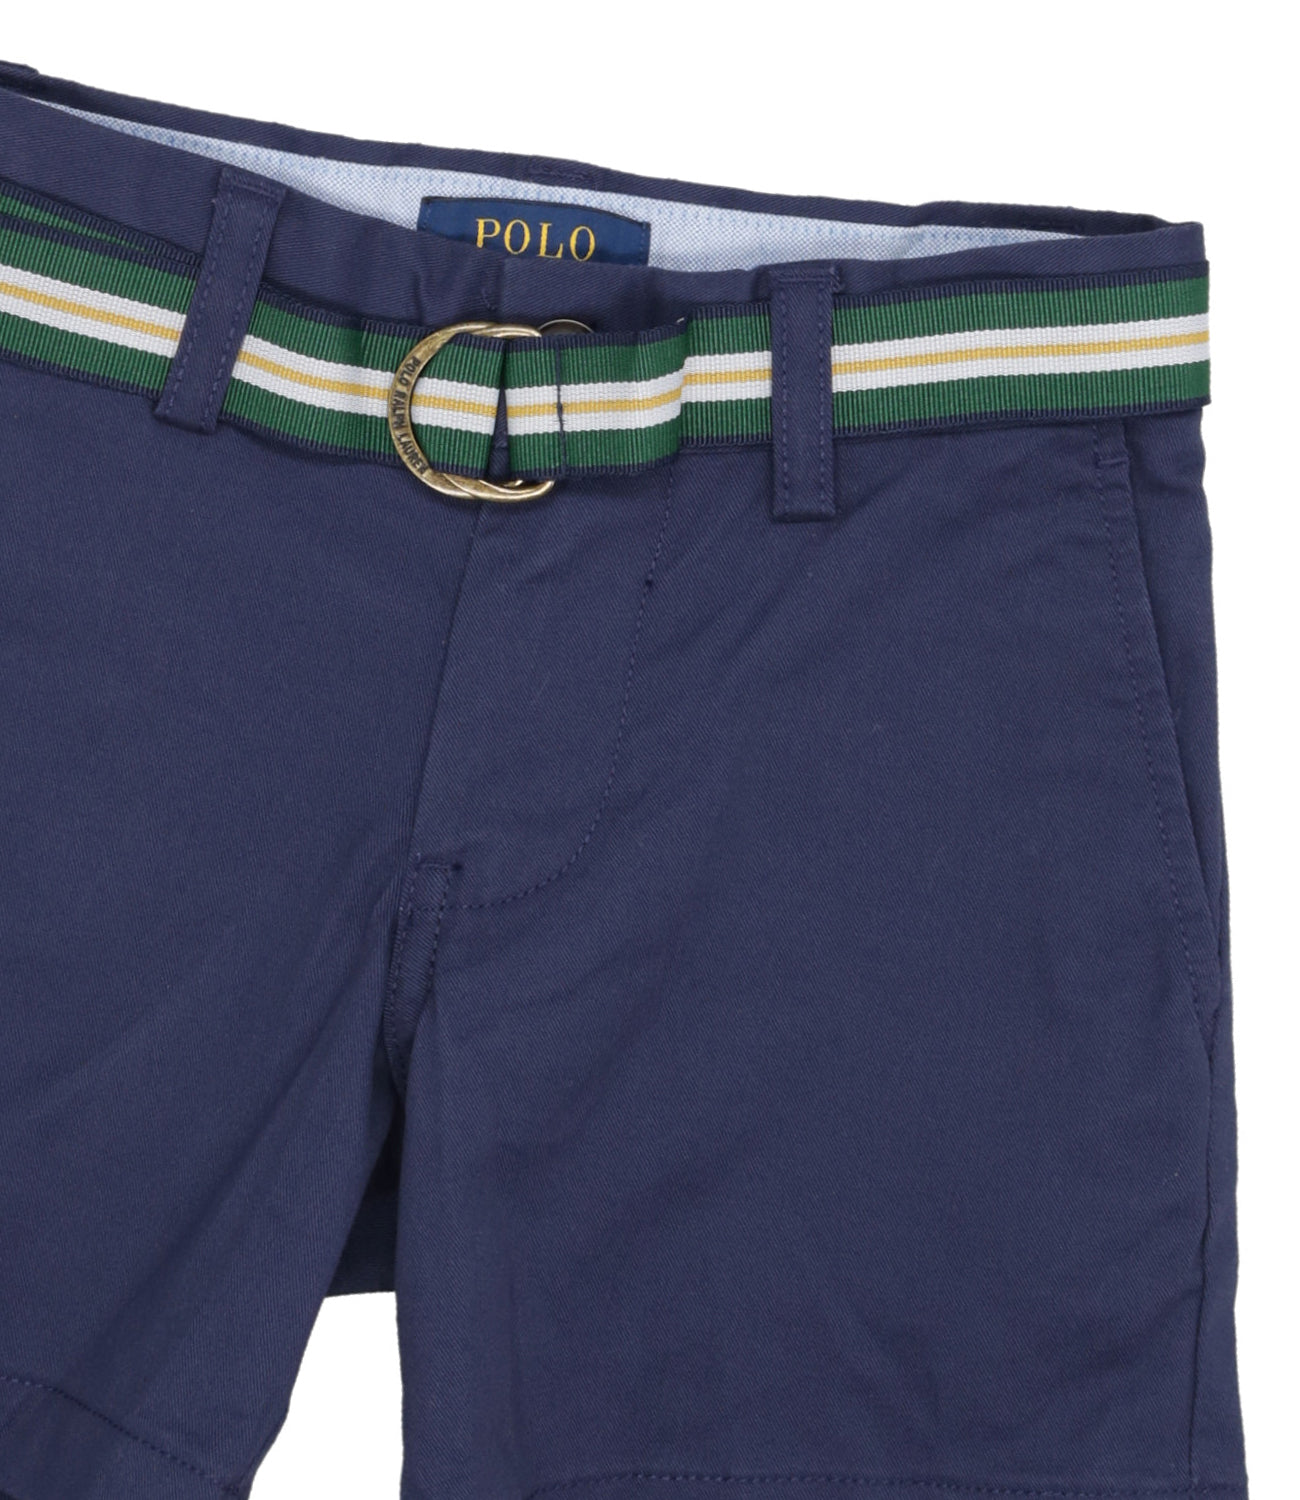 Ralph Lauren Childrenswear | Navy Blue Bermuda Shorts